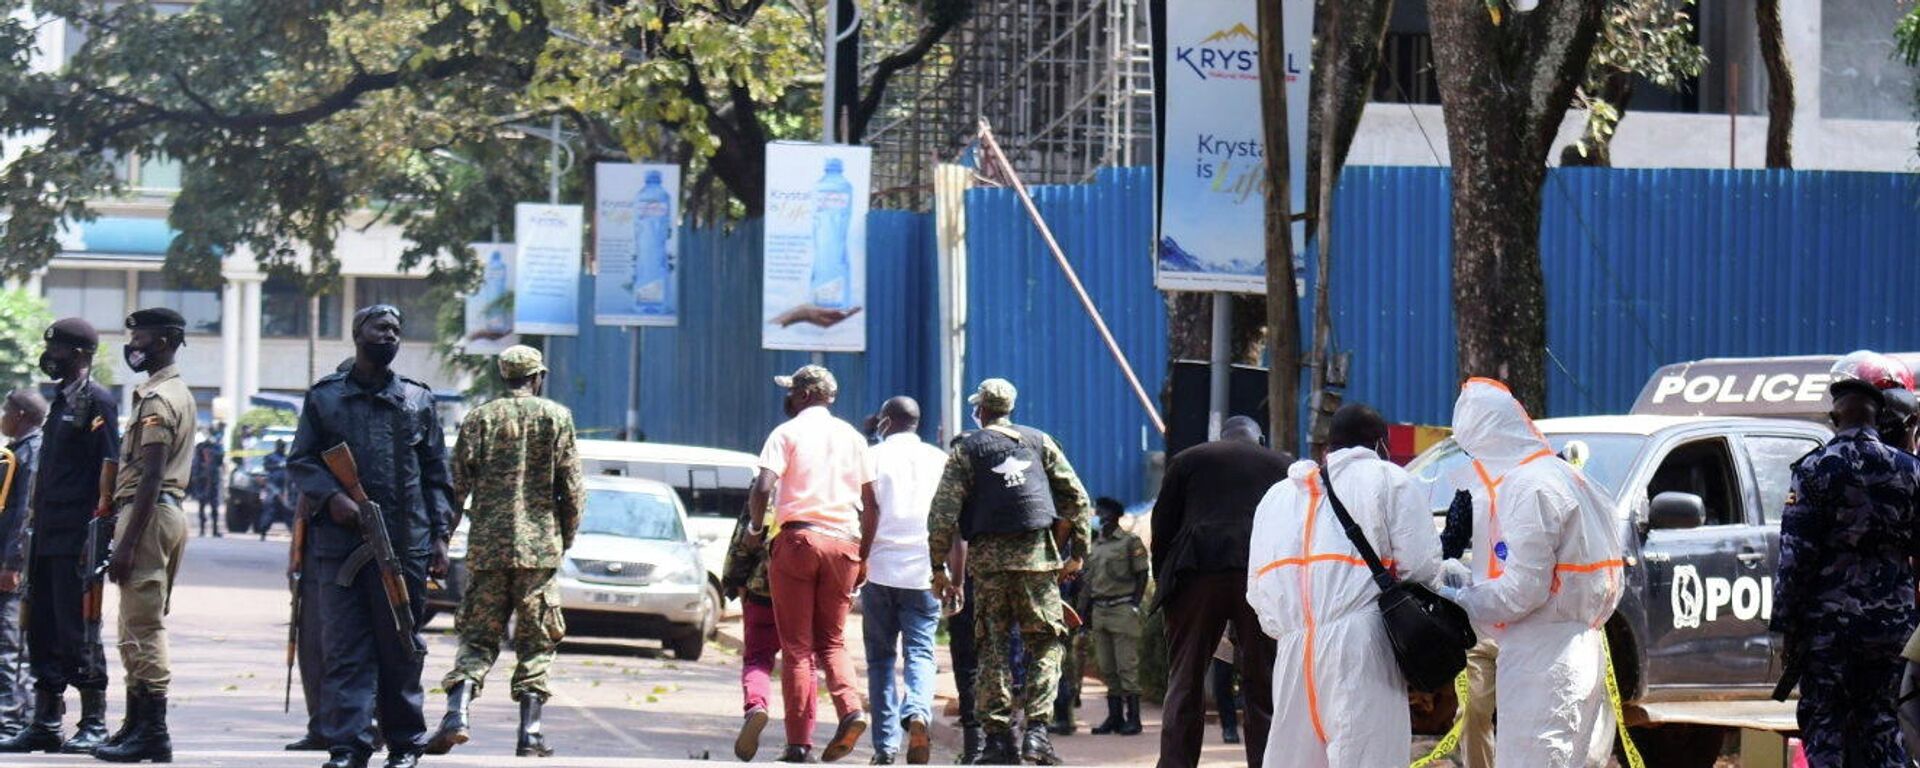 La police ougandaise sur les lieux de l'attentat à Kampala, le 16 novembre 2021 - Sputnik Afrique, 1920, 18.11.2021